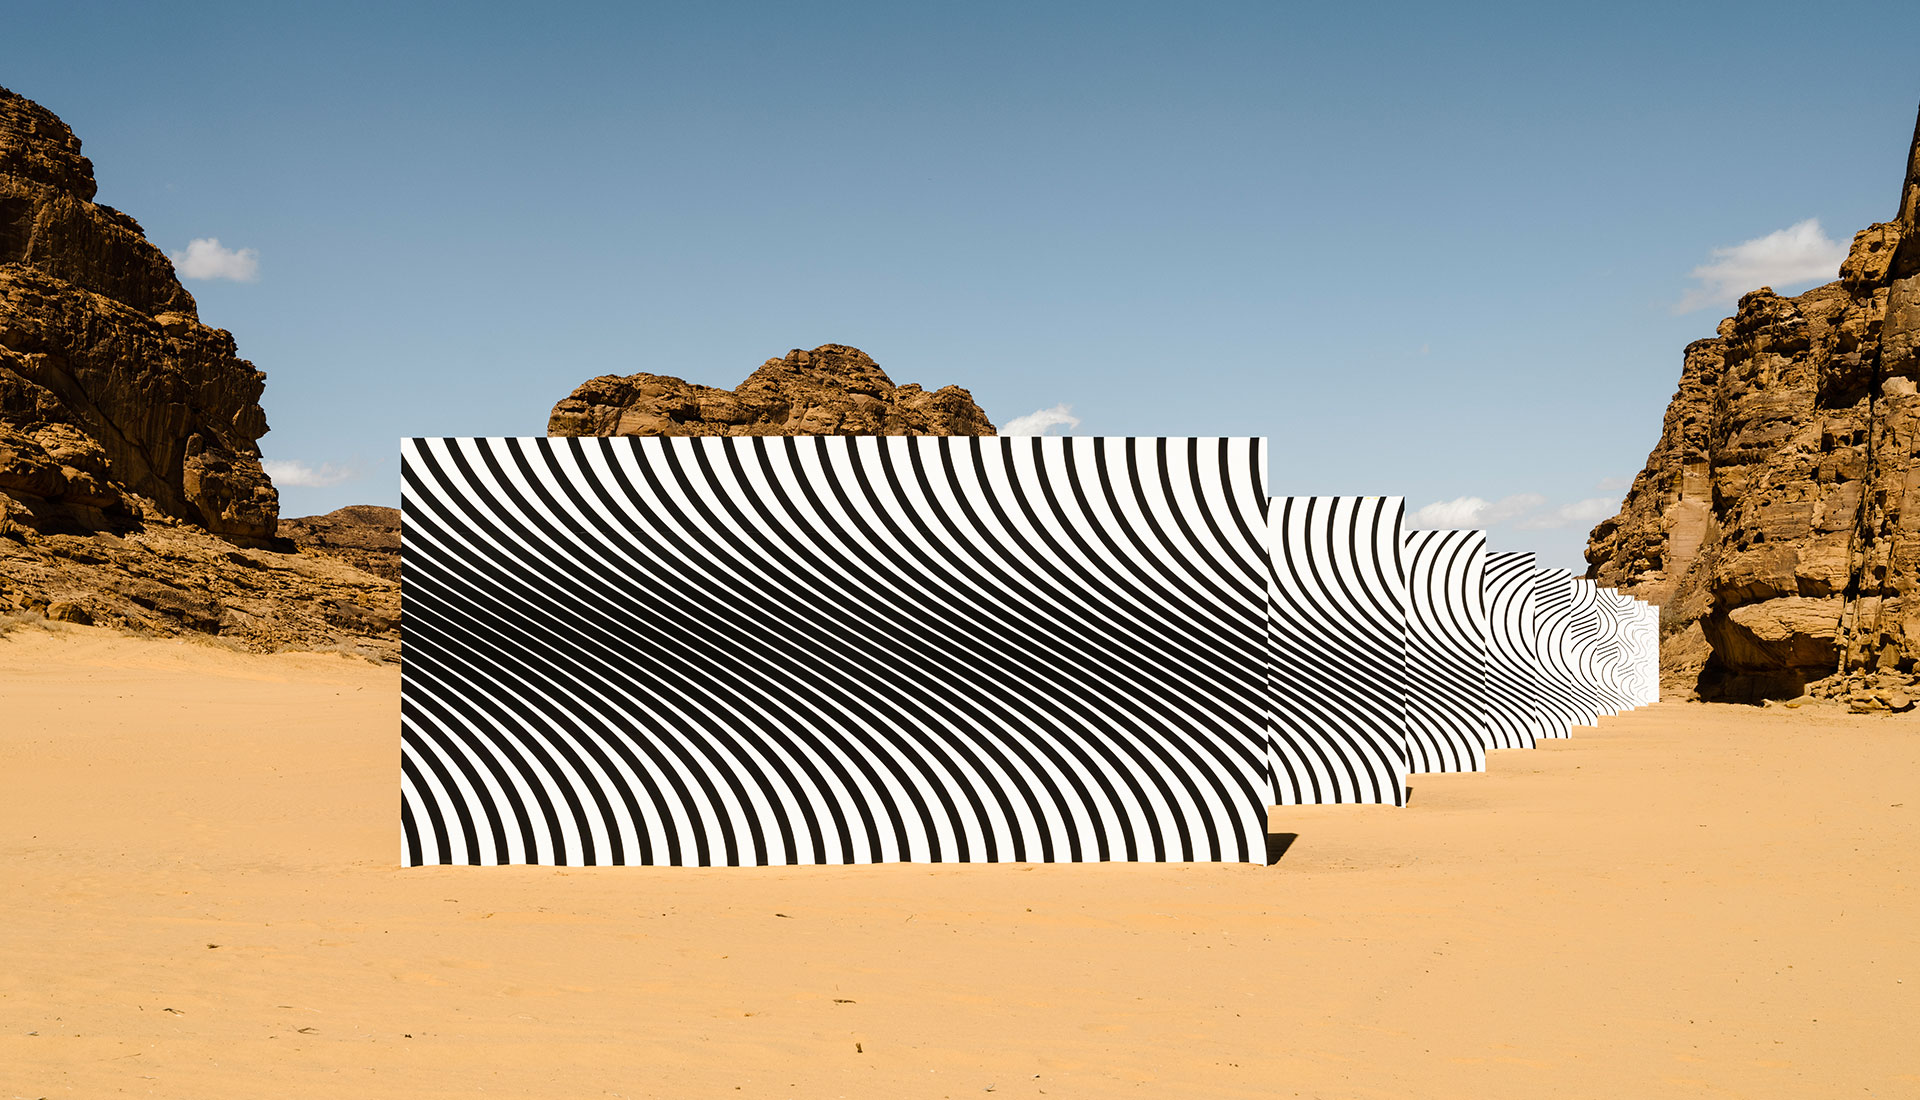 Паблик-арт в аравийской пустыне Аль-Ула